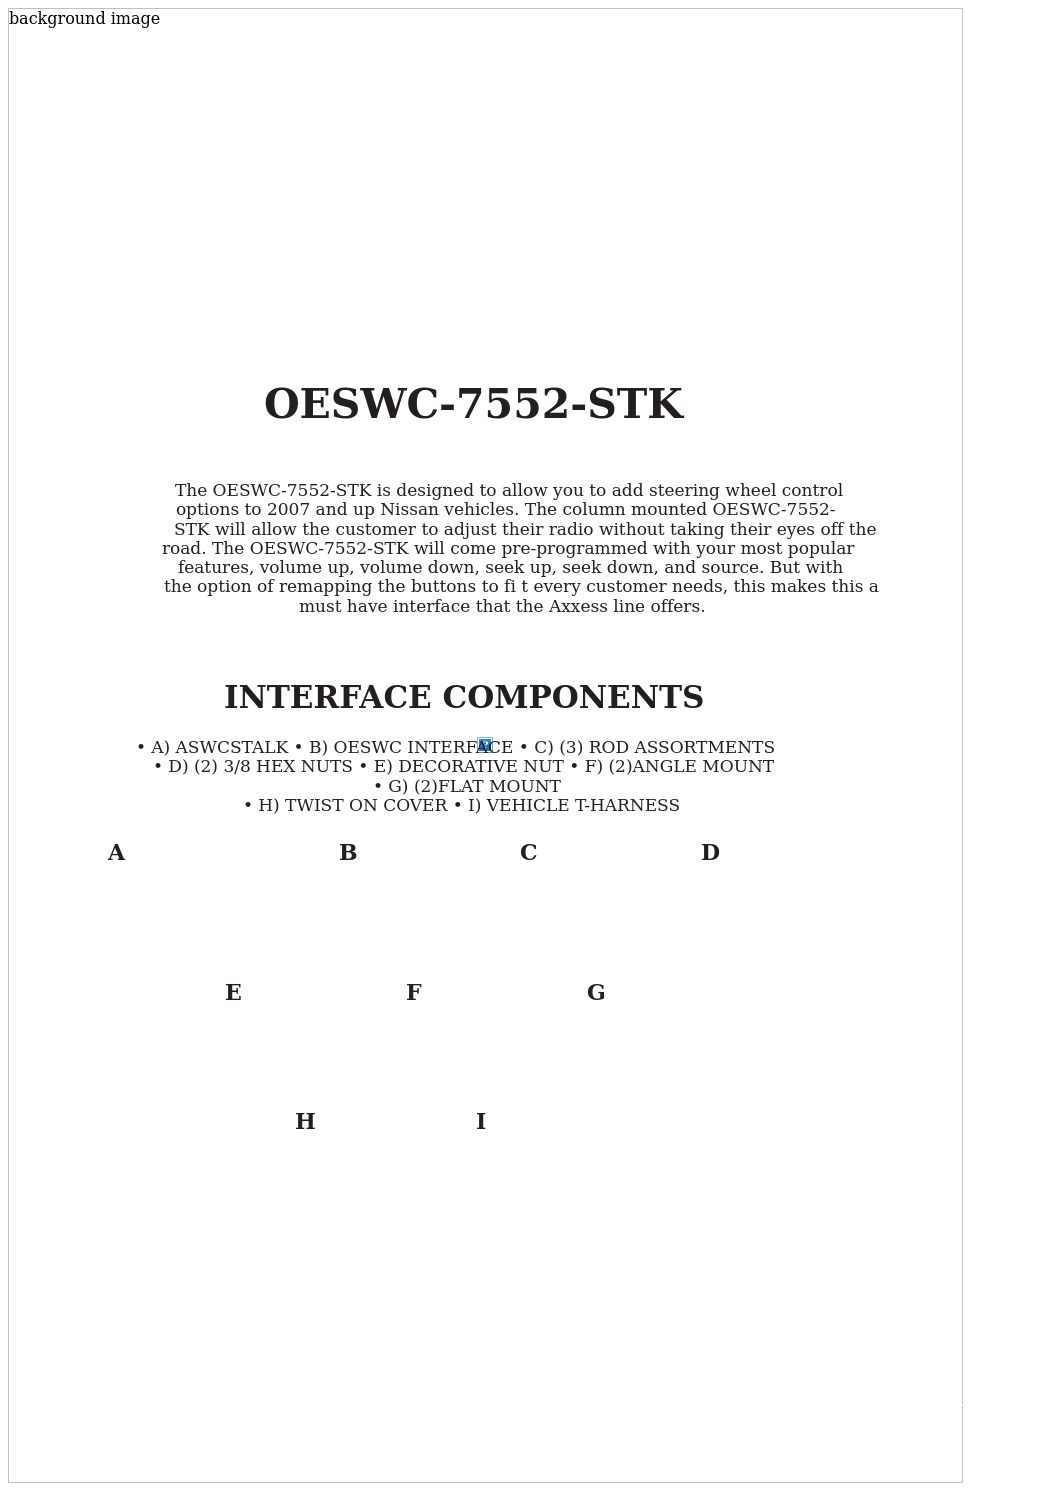 OESWC-7552-STK